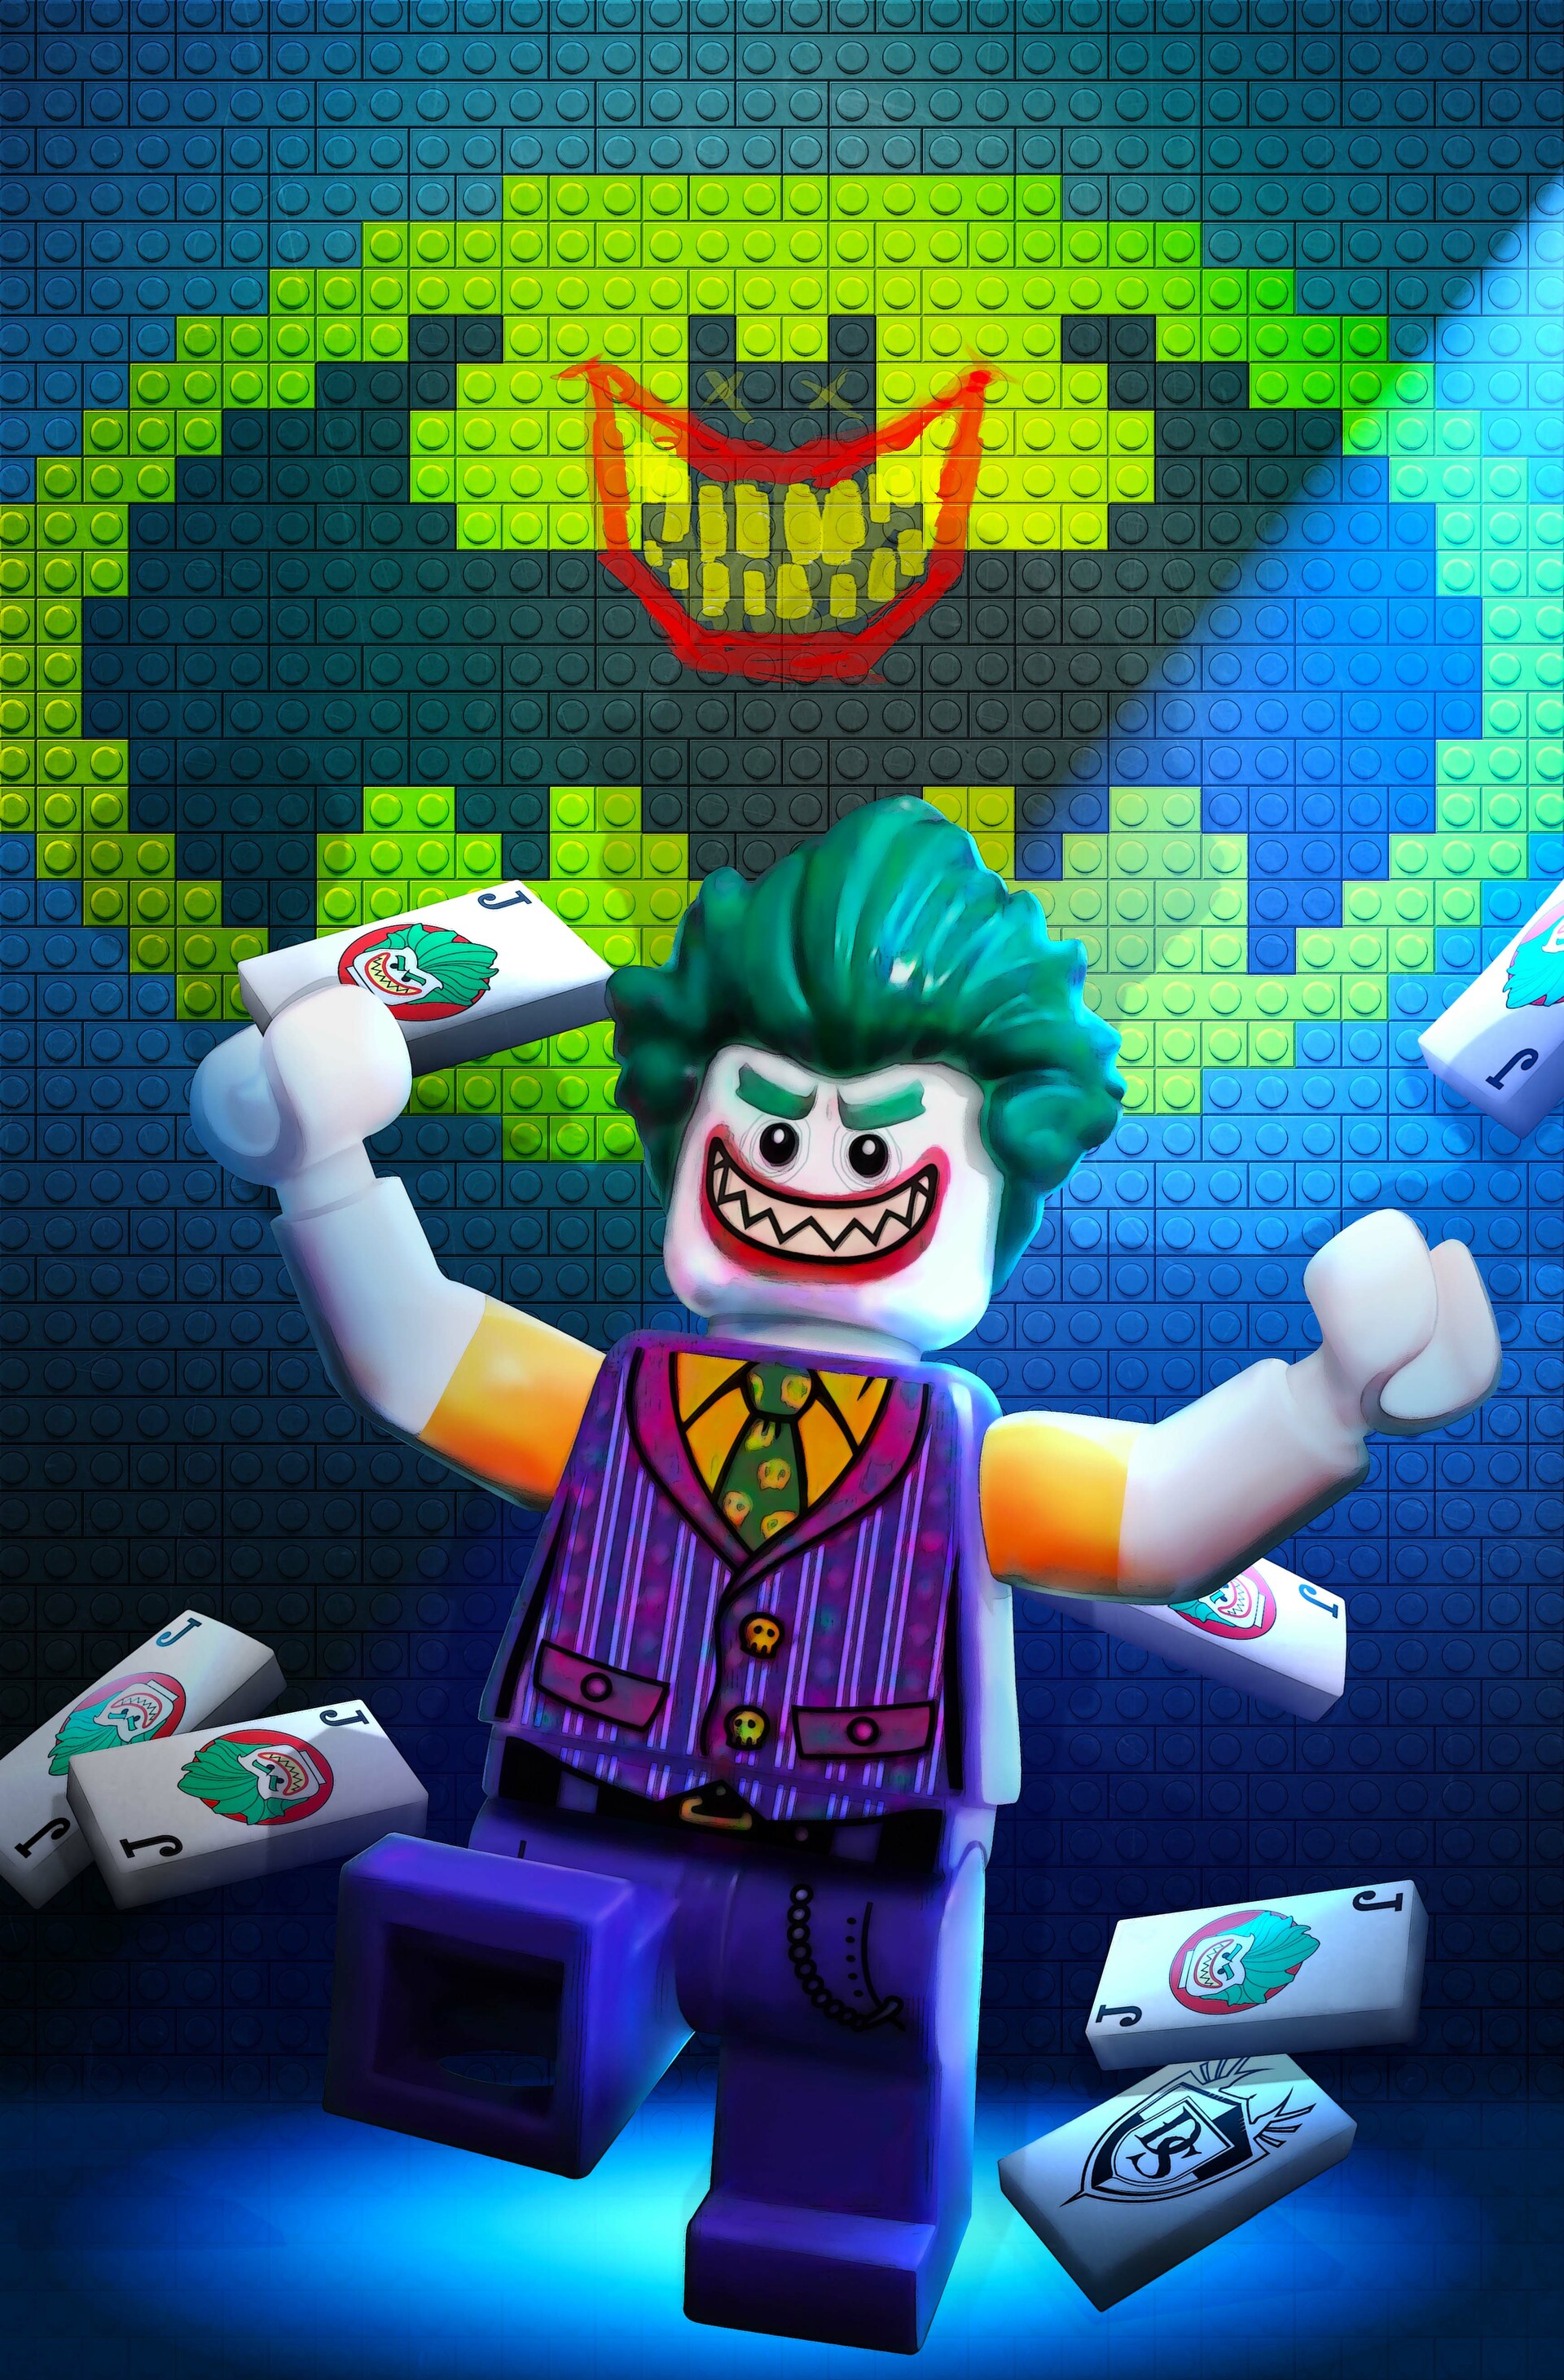 ArtStation - Lego Joker